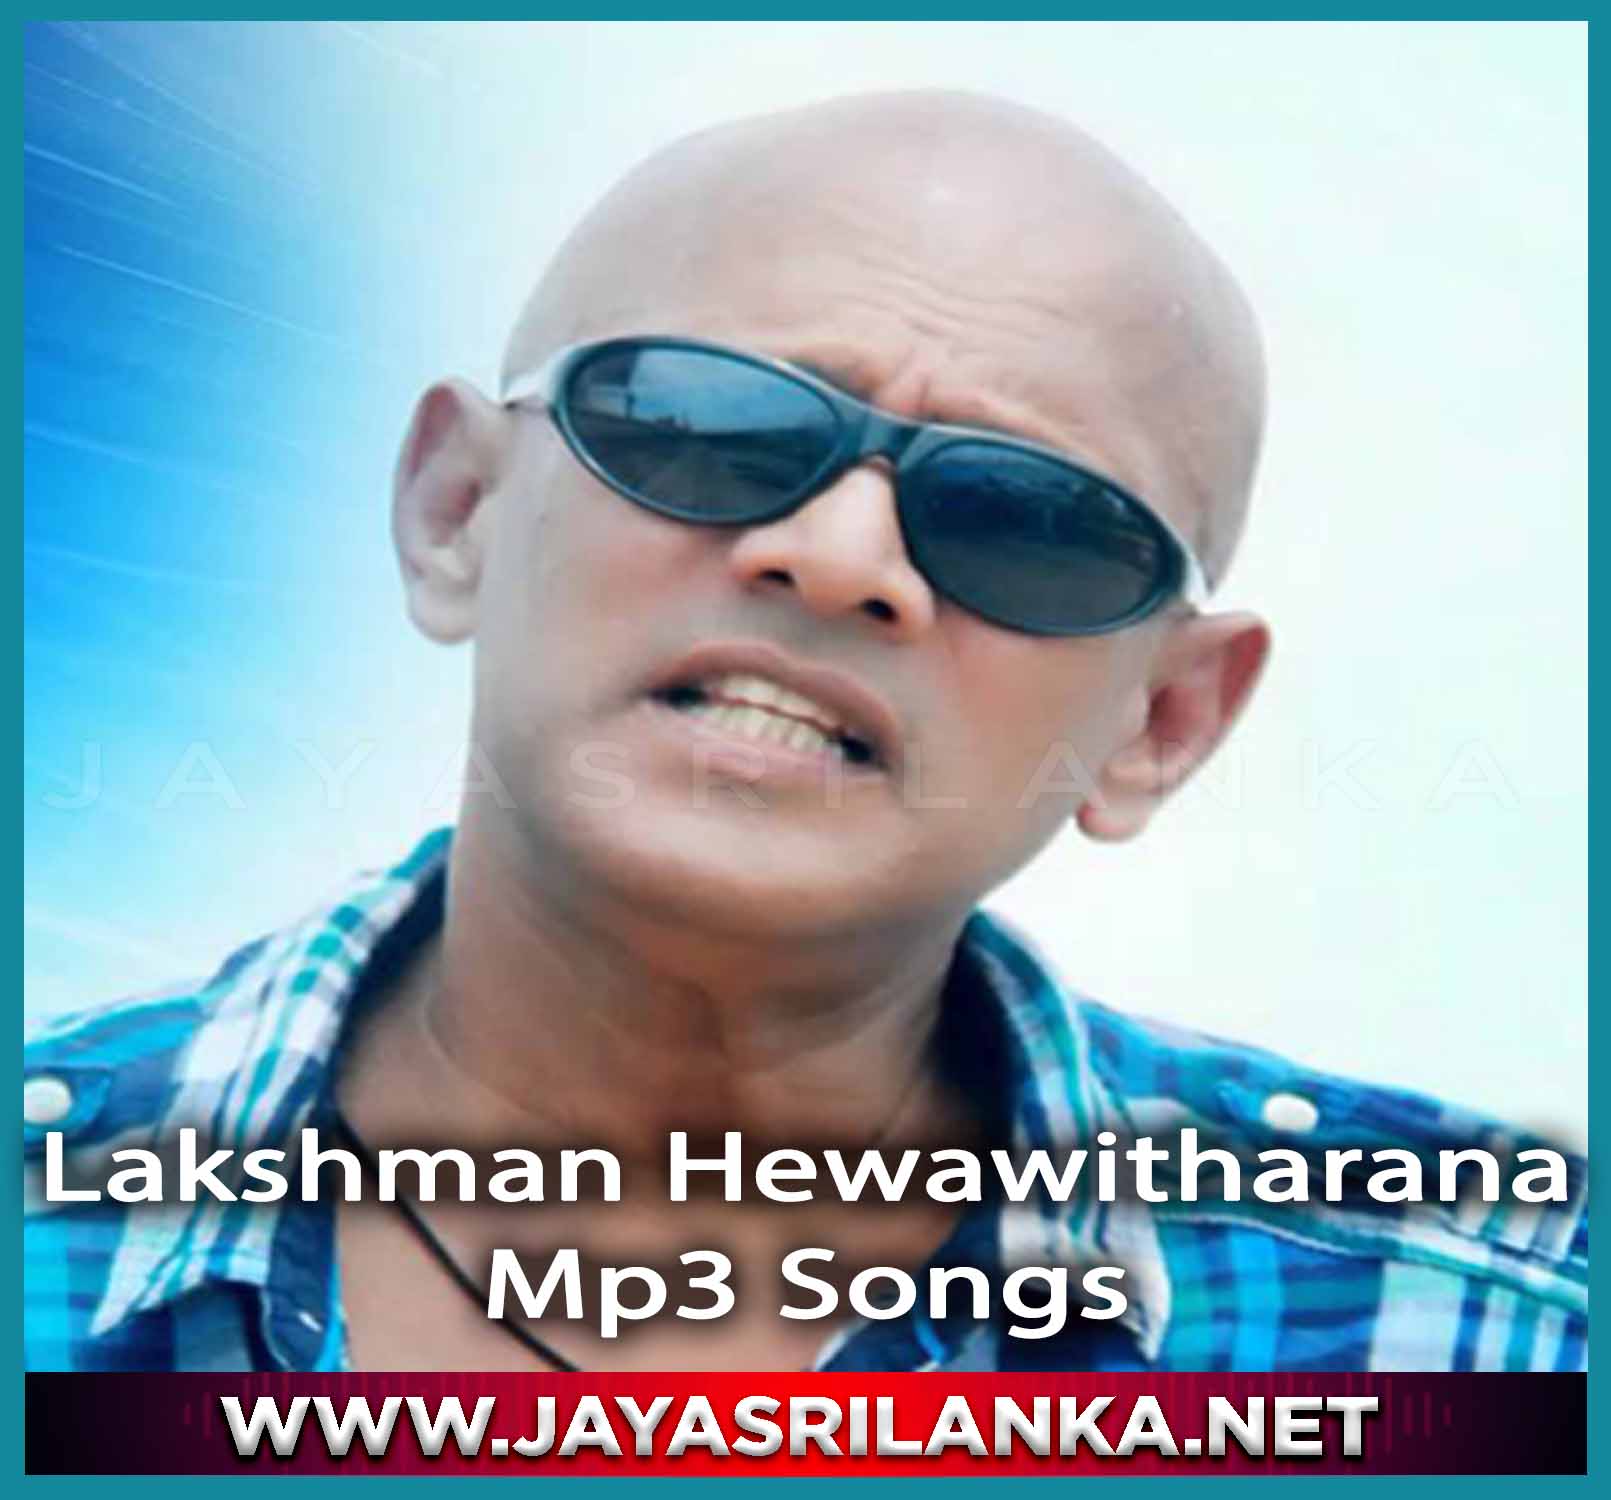 Lakshman Hewawitharana  